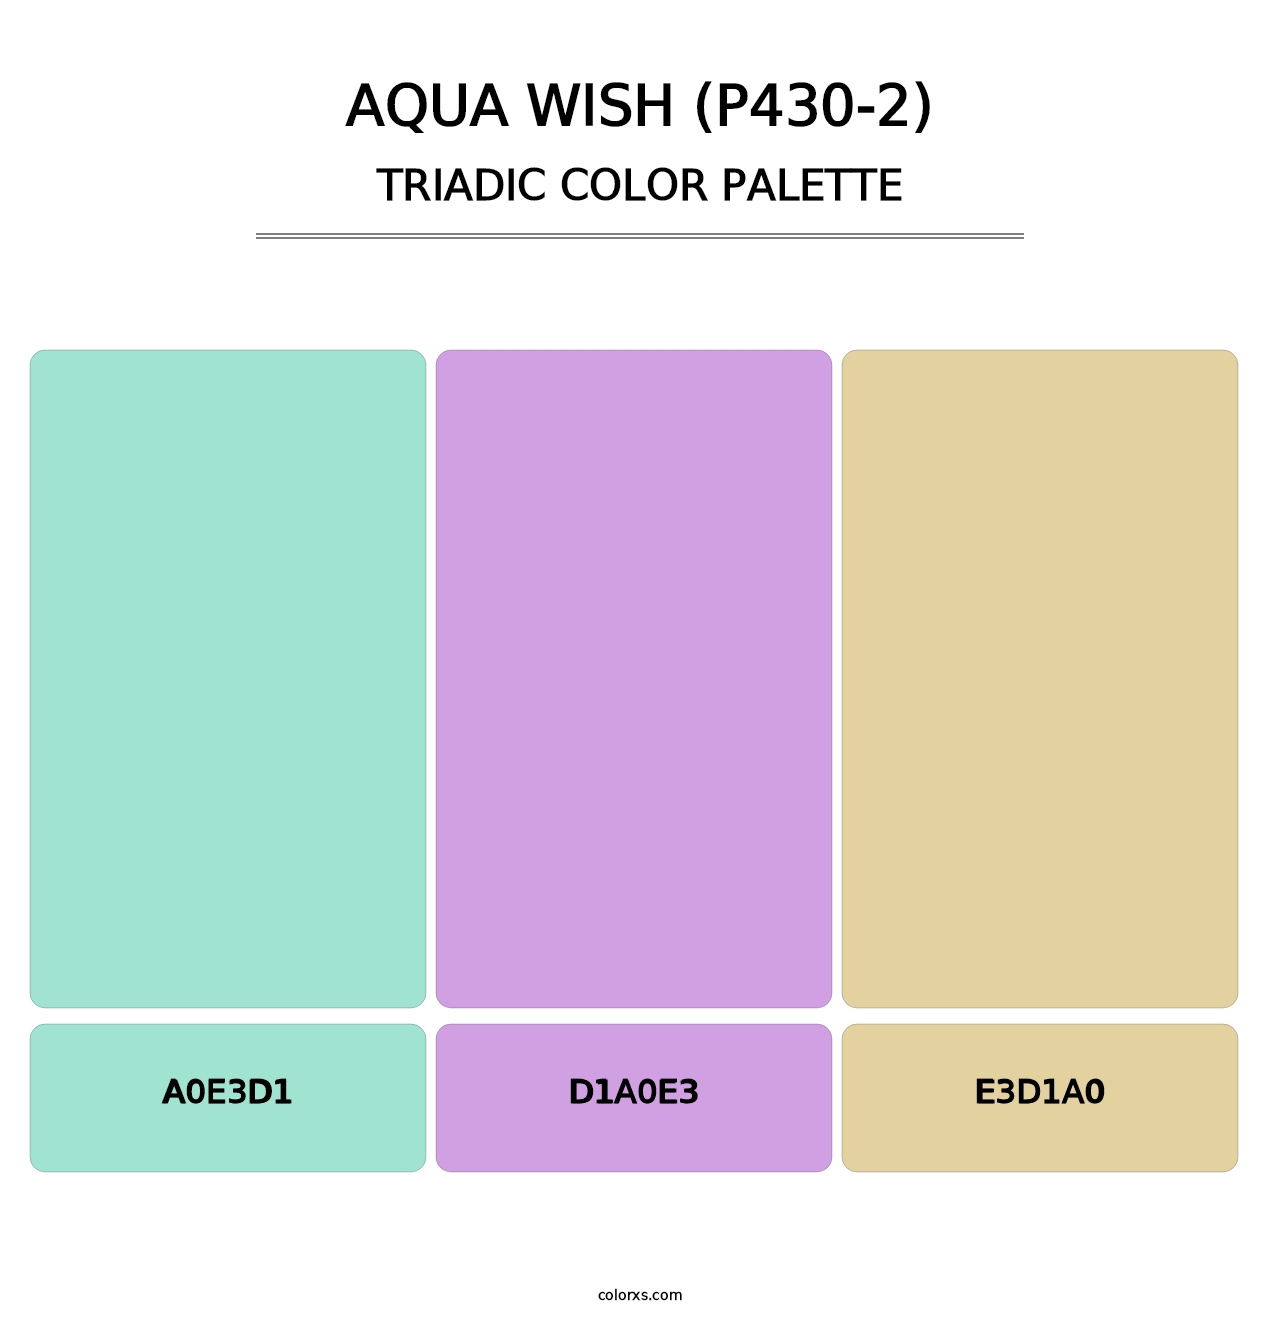 Aqua Wish (P430-2) - Triadic Color Palette